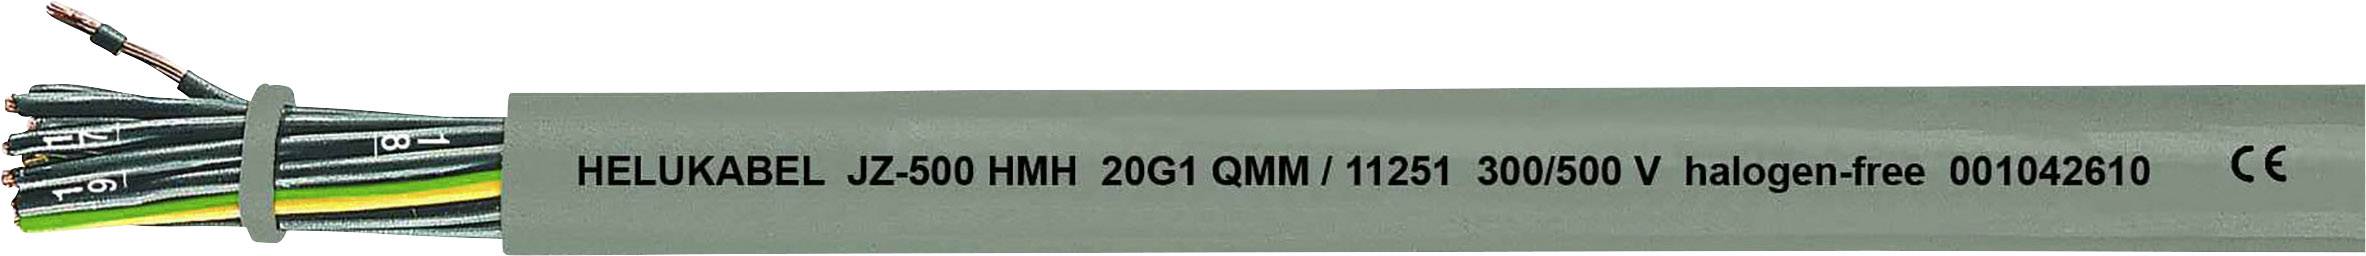 HELUKABEL JZ-500 HMH Steuerleitung 4 G 1.50 mm² Grau 11262-1000 1000 m